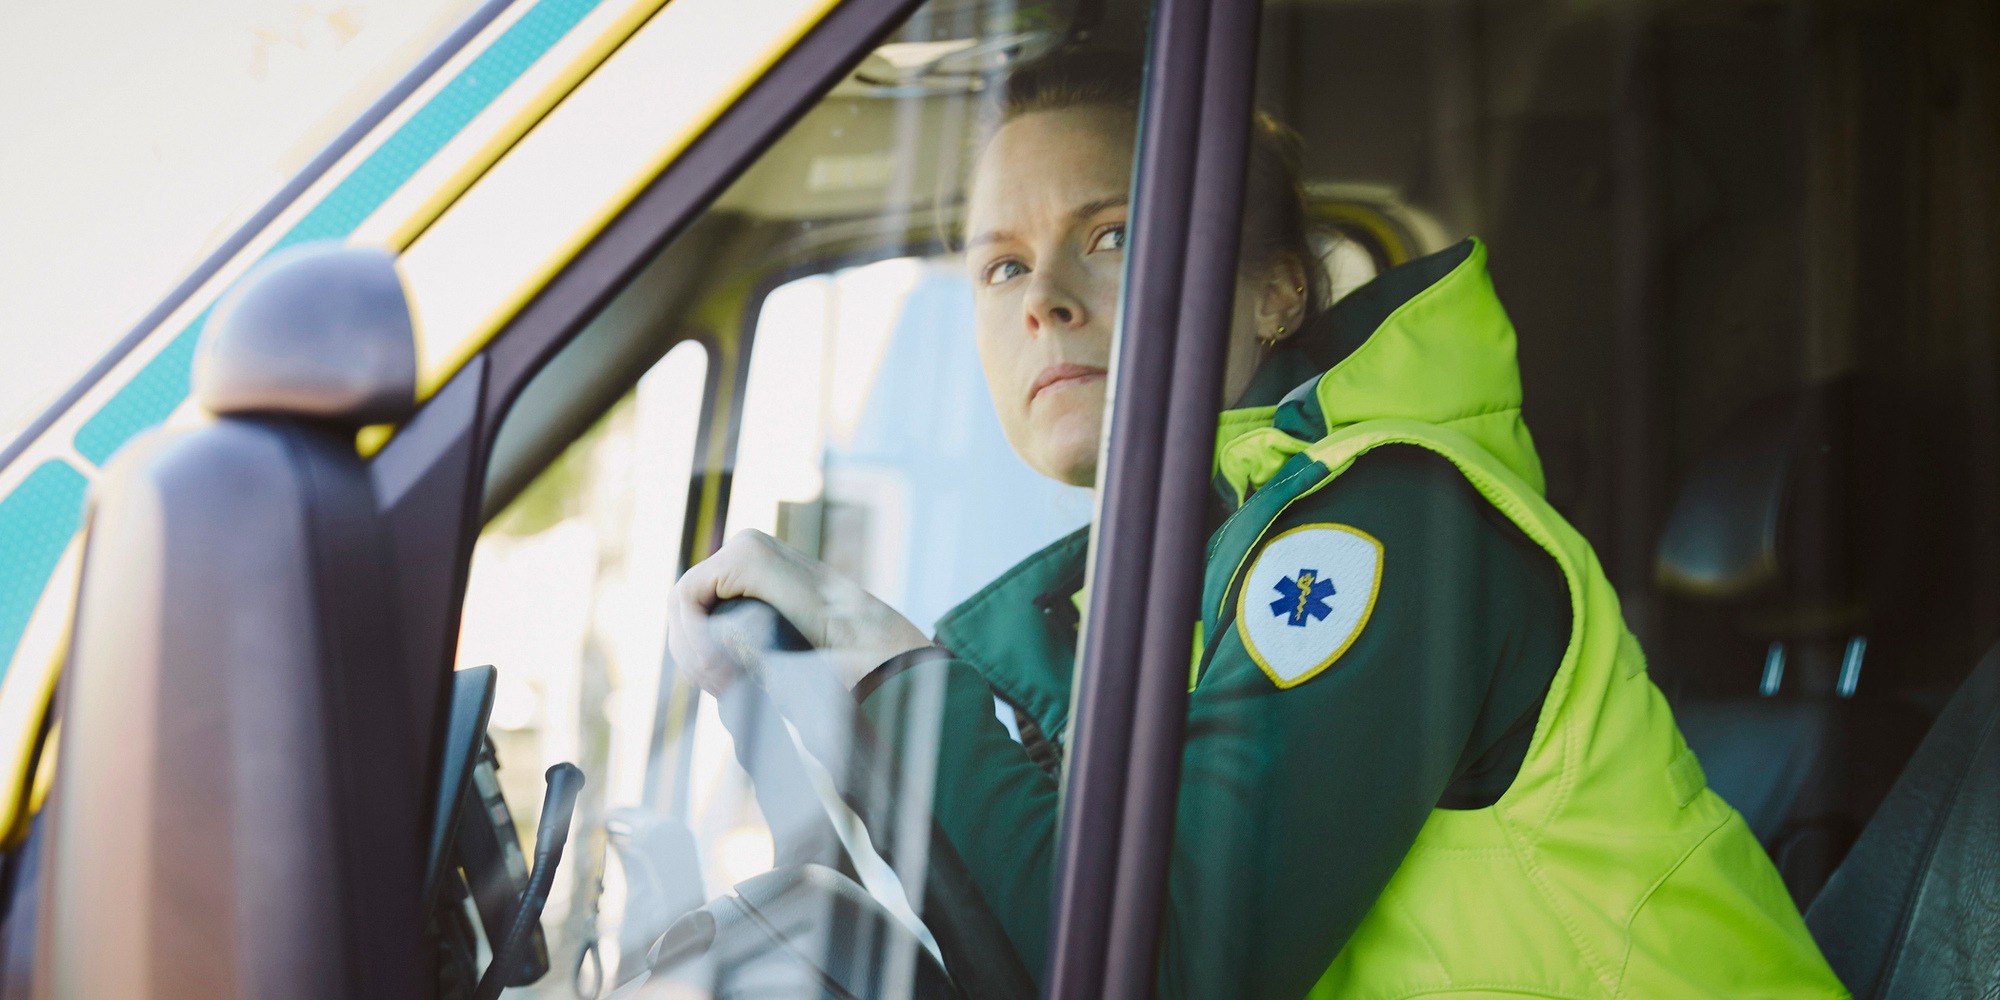 Ambulanspersonal kvinna i ambulans förarsäte, tema hot och våld på arbetsplatsen.